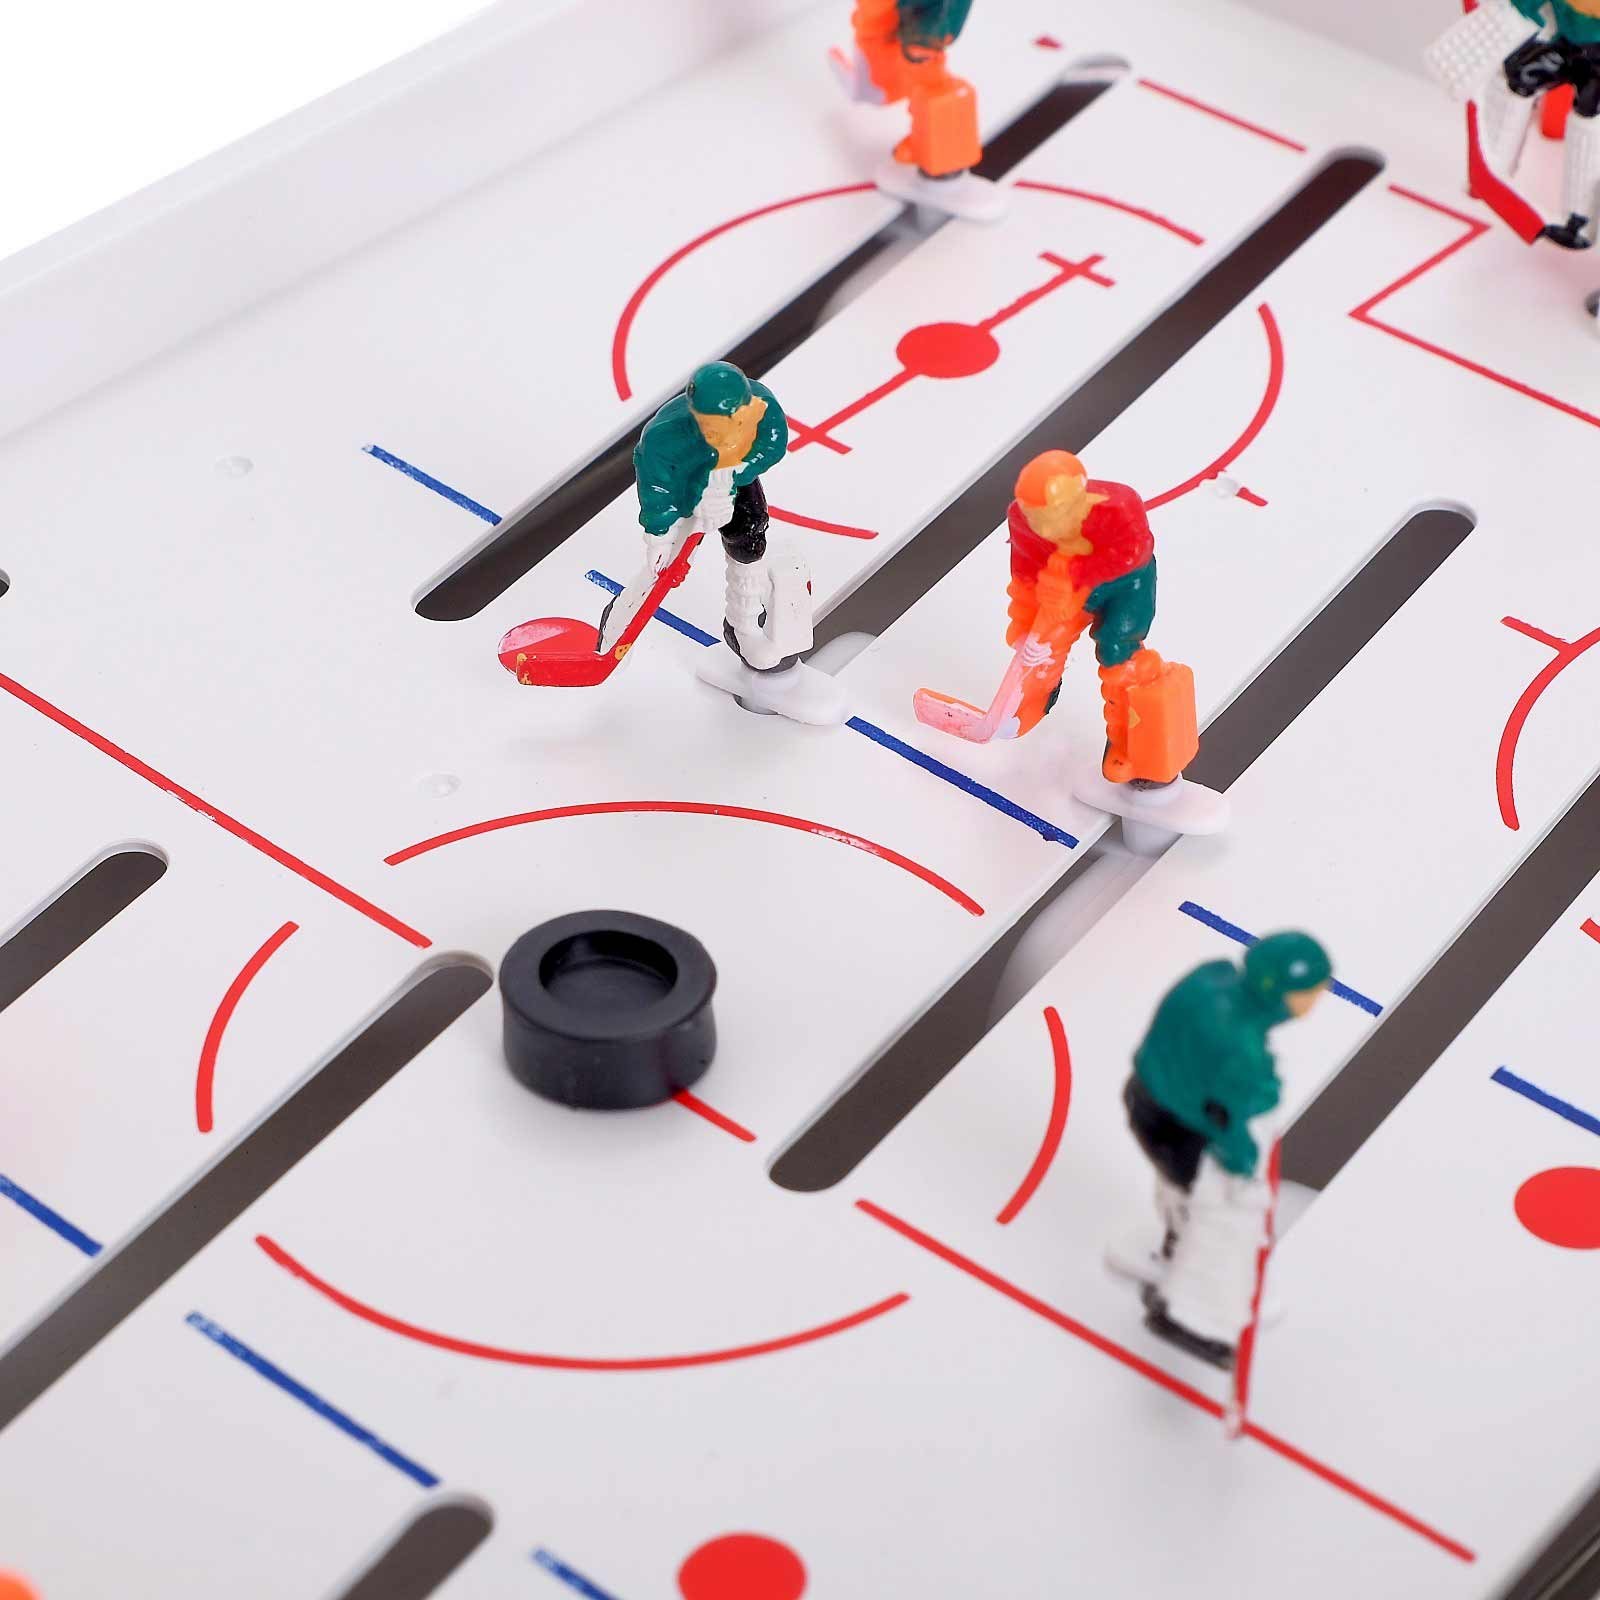 Настольная игра Play Smart «Хоккей» 0701, 51x28x15 см.